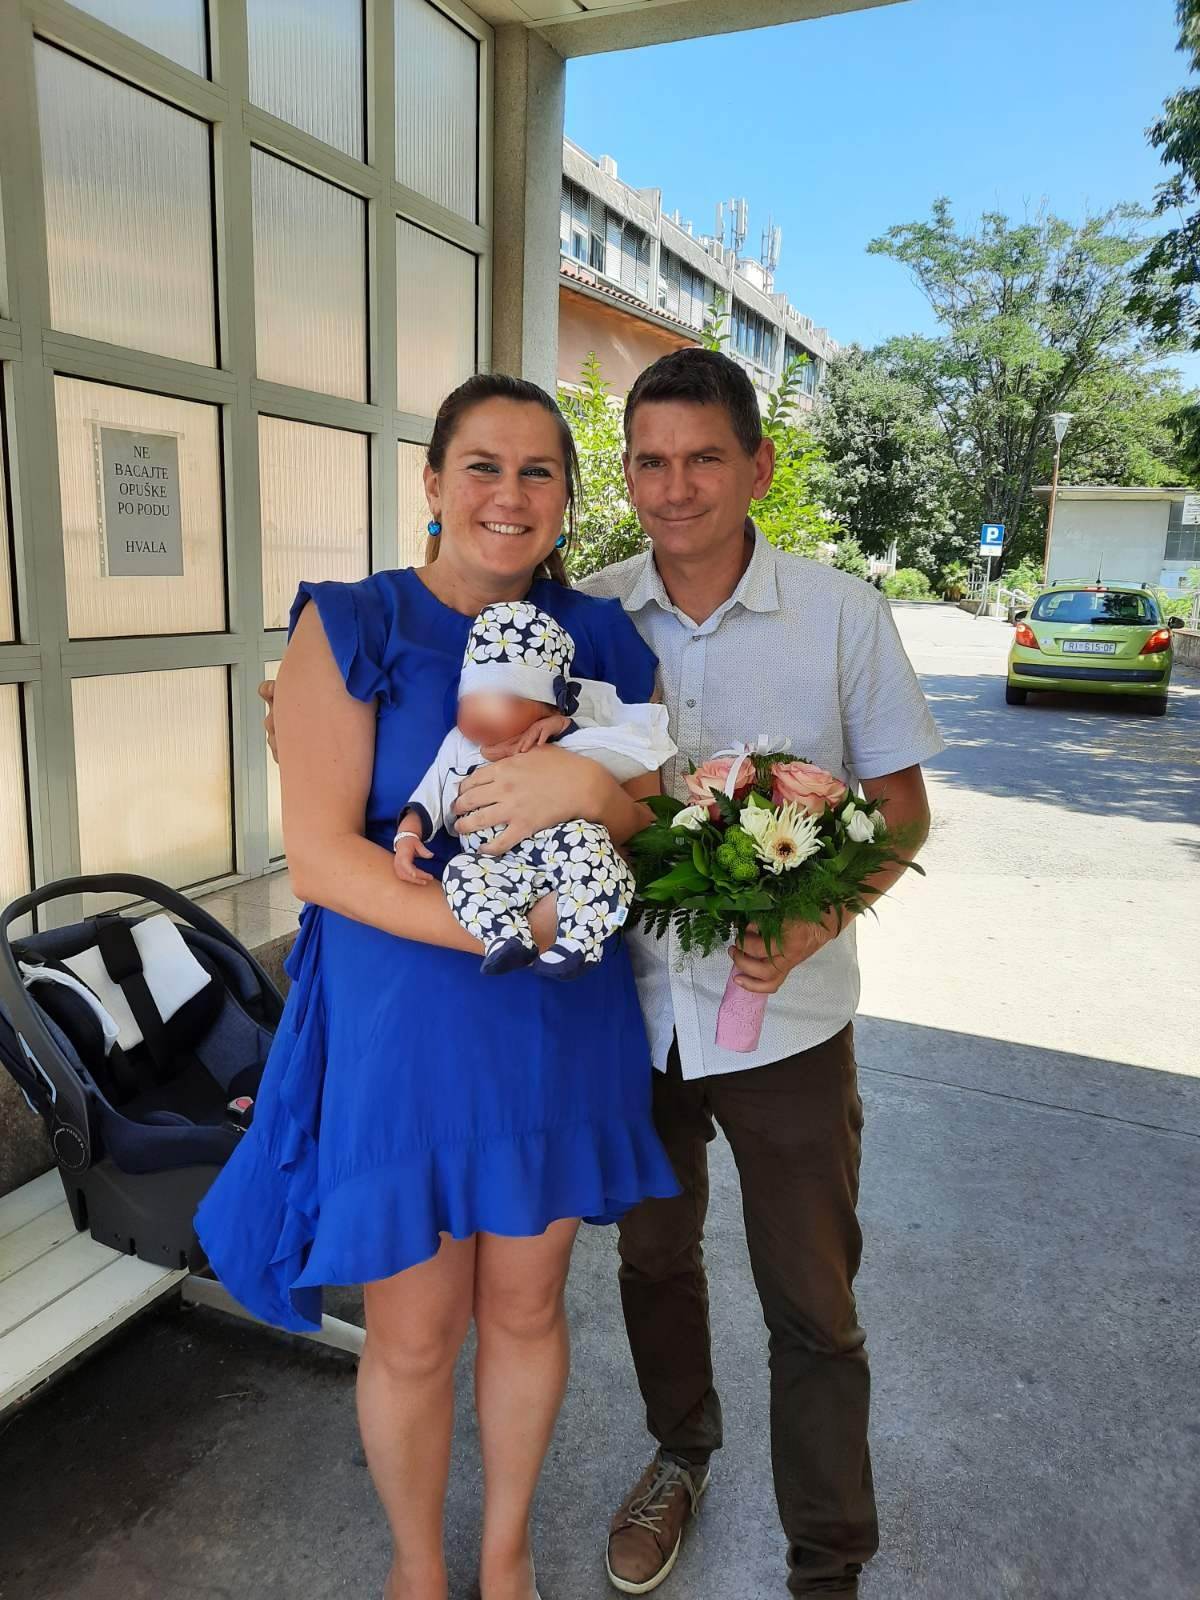 Fatalni farmer iz 'Ljubav je na selu' dobio drugo dijete: 'Sretni smo jako'